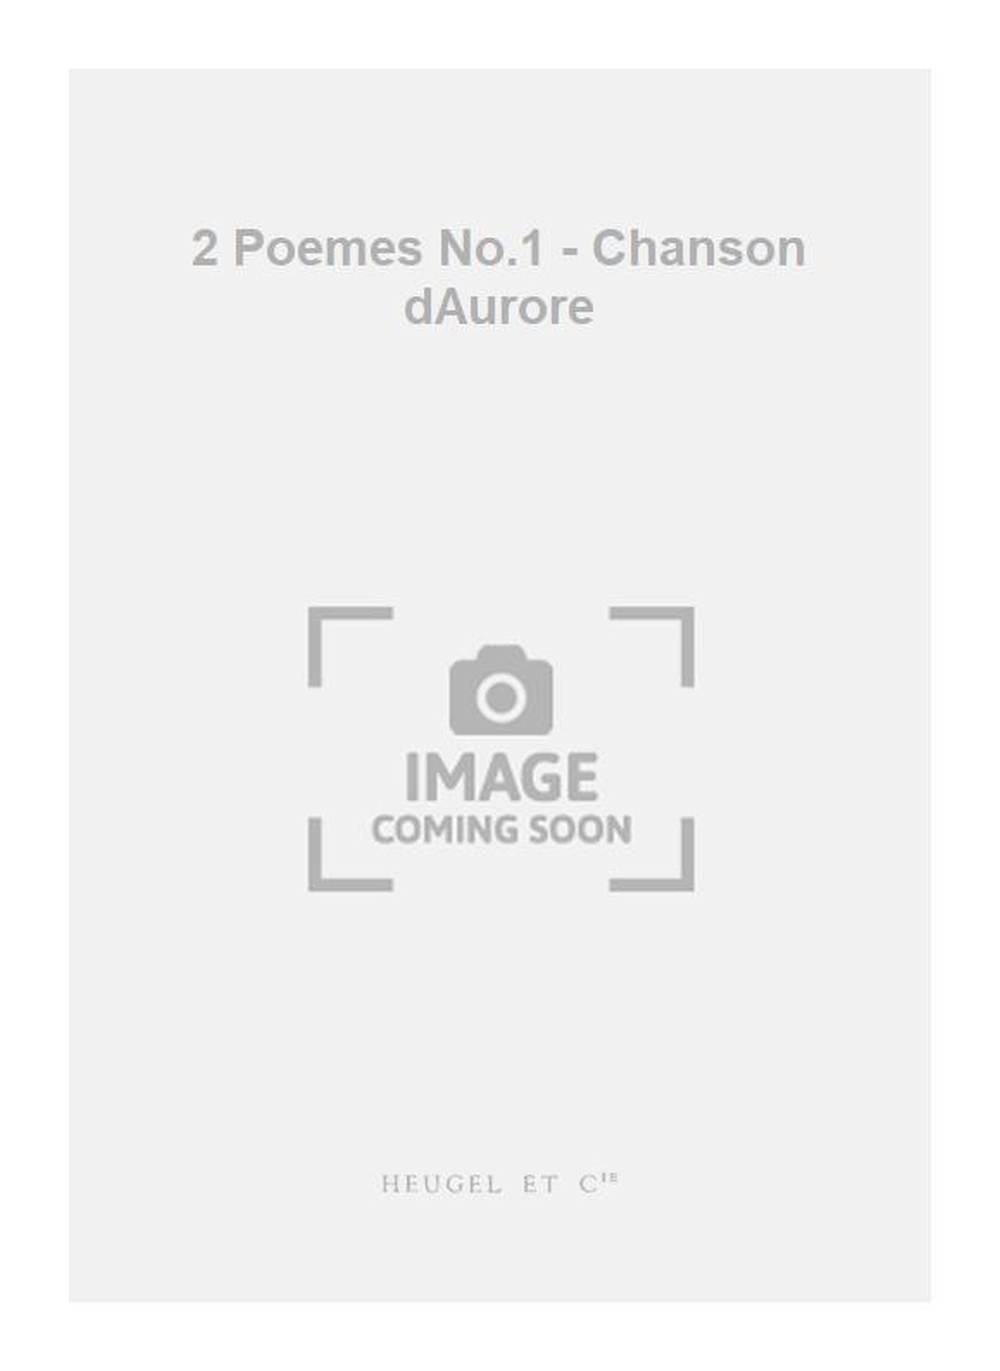 Maurice Jaubert: 2 Poemes No.1 - Chanson dAurore